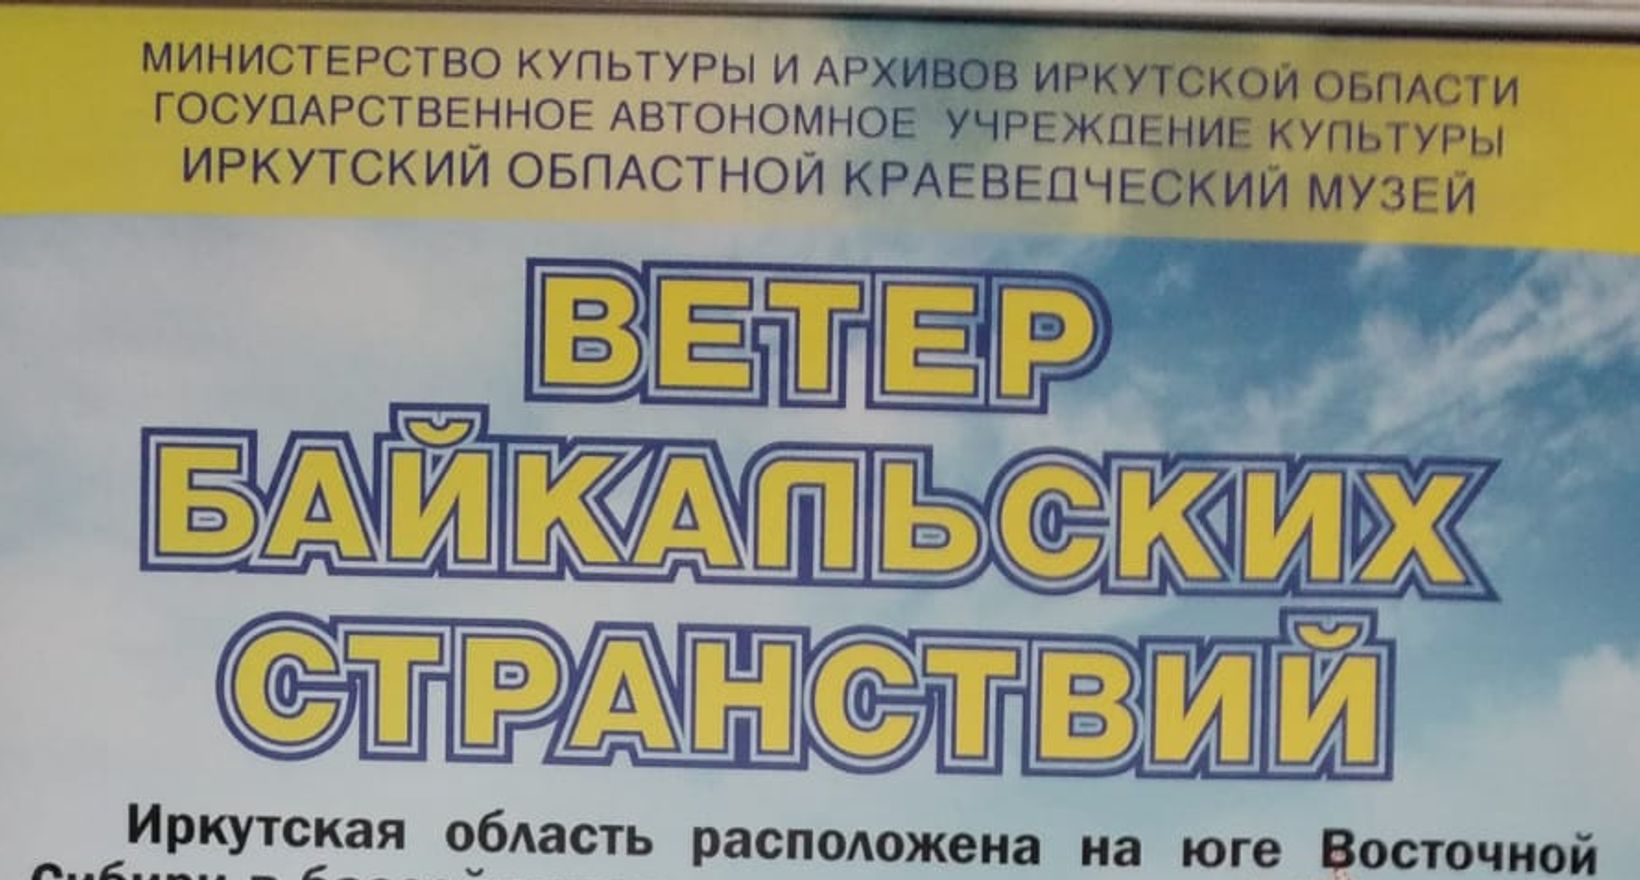 Выставка "Ветер Байкальских странствий"